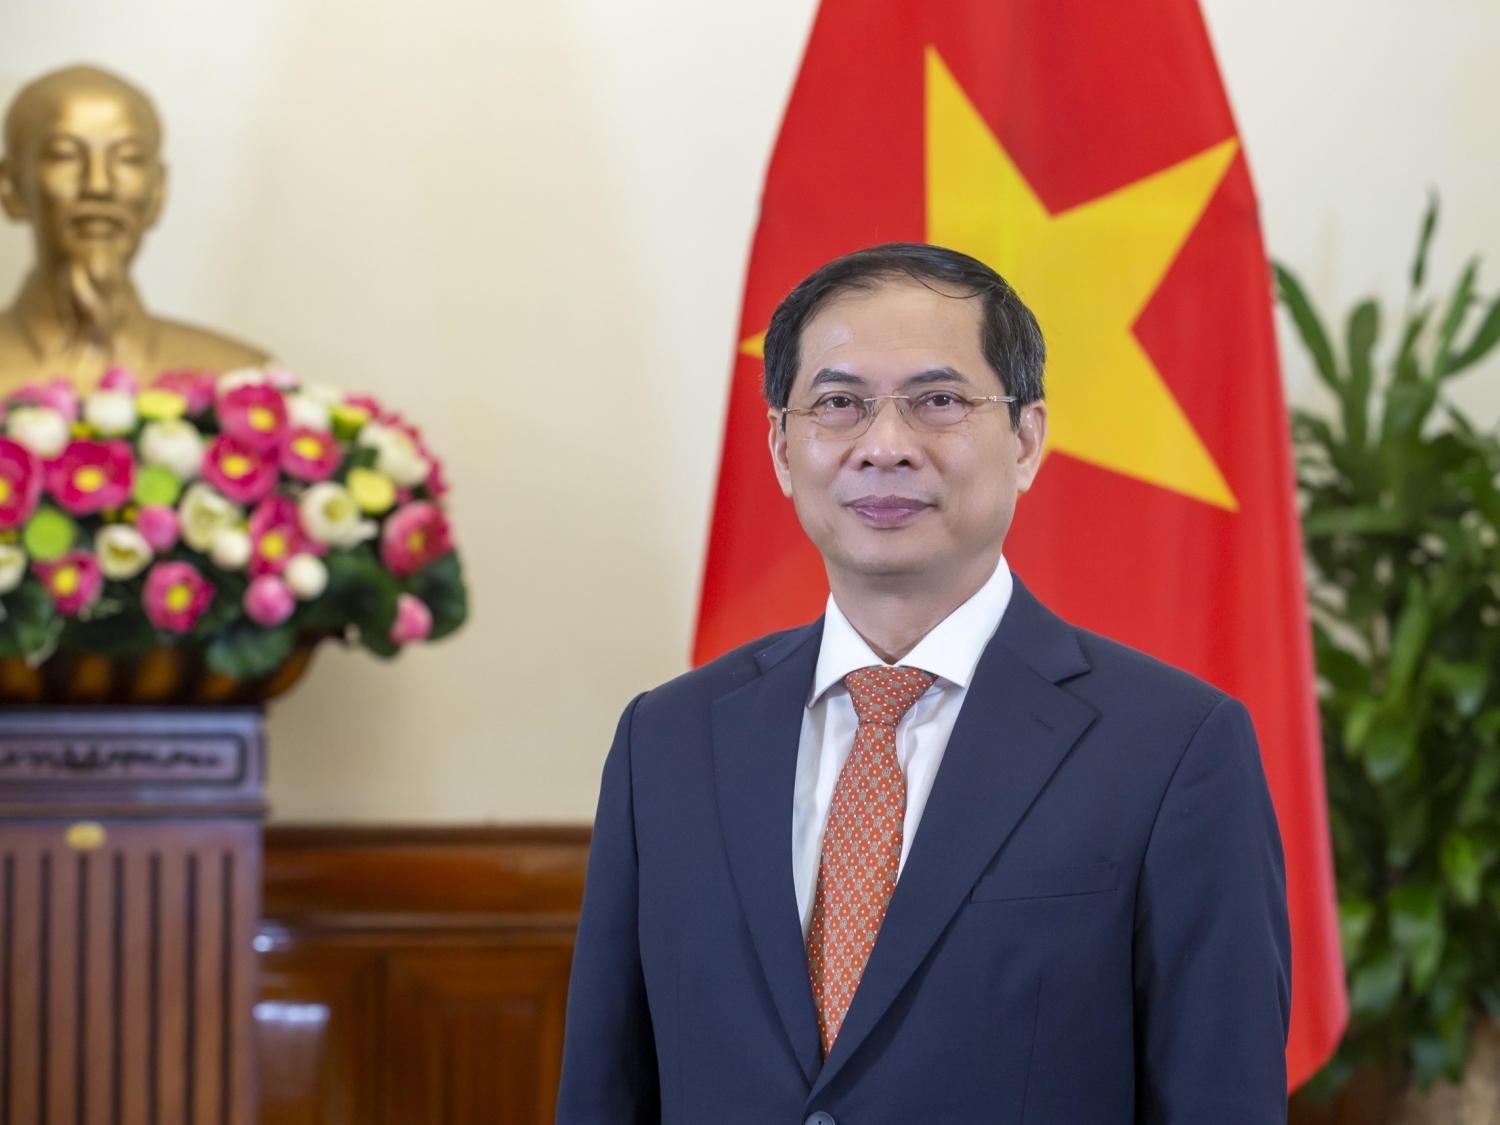 Ngoại giao Việt Nam vì sự nghiệp bảo vệ và phát triển đất nước dưới ánh sáng nghị quyết Đại hội Đảng lần thứ XIII